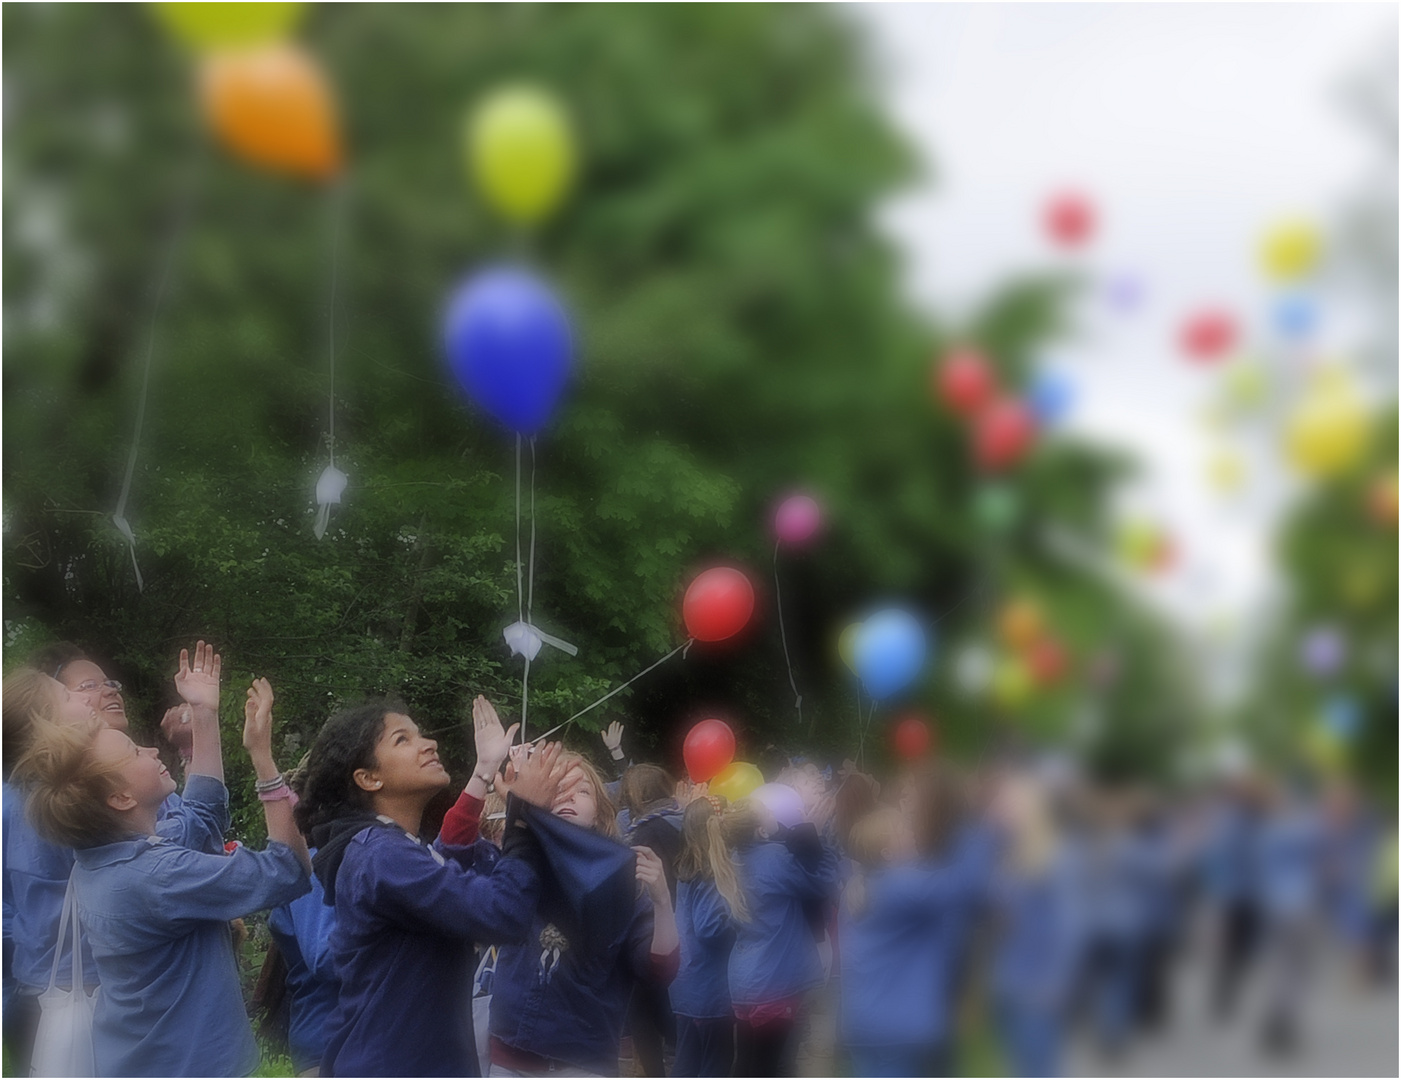 99 Luftballons und viele gute Wünsche